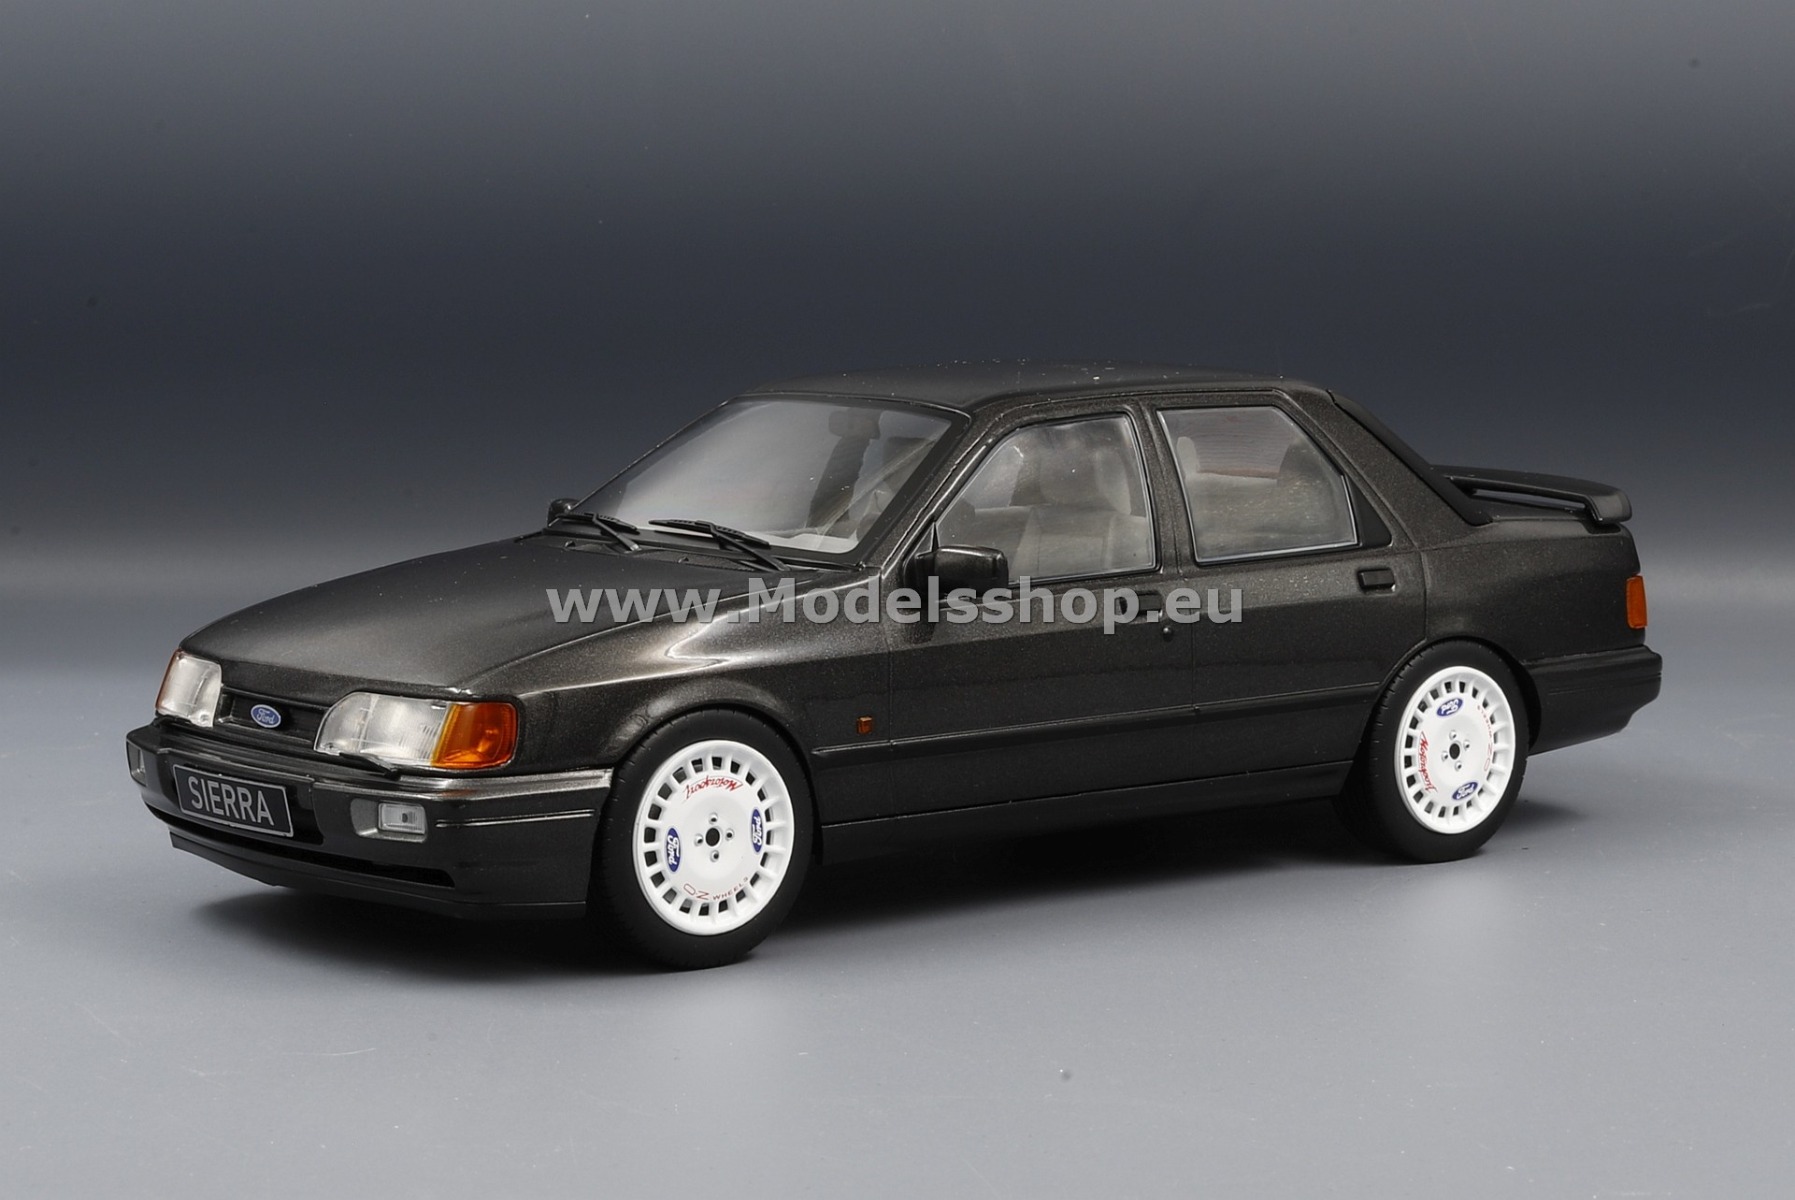 MCG 18306 Ford Sierra Cosworth, 1988 /dark grey - metallic/